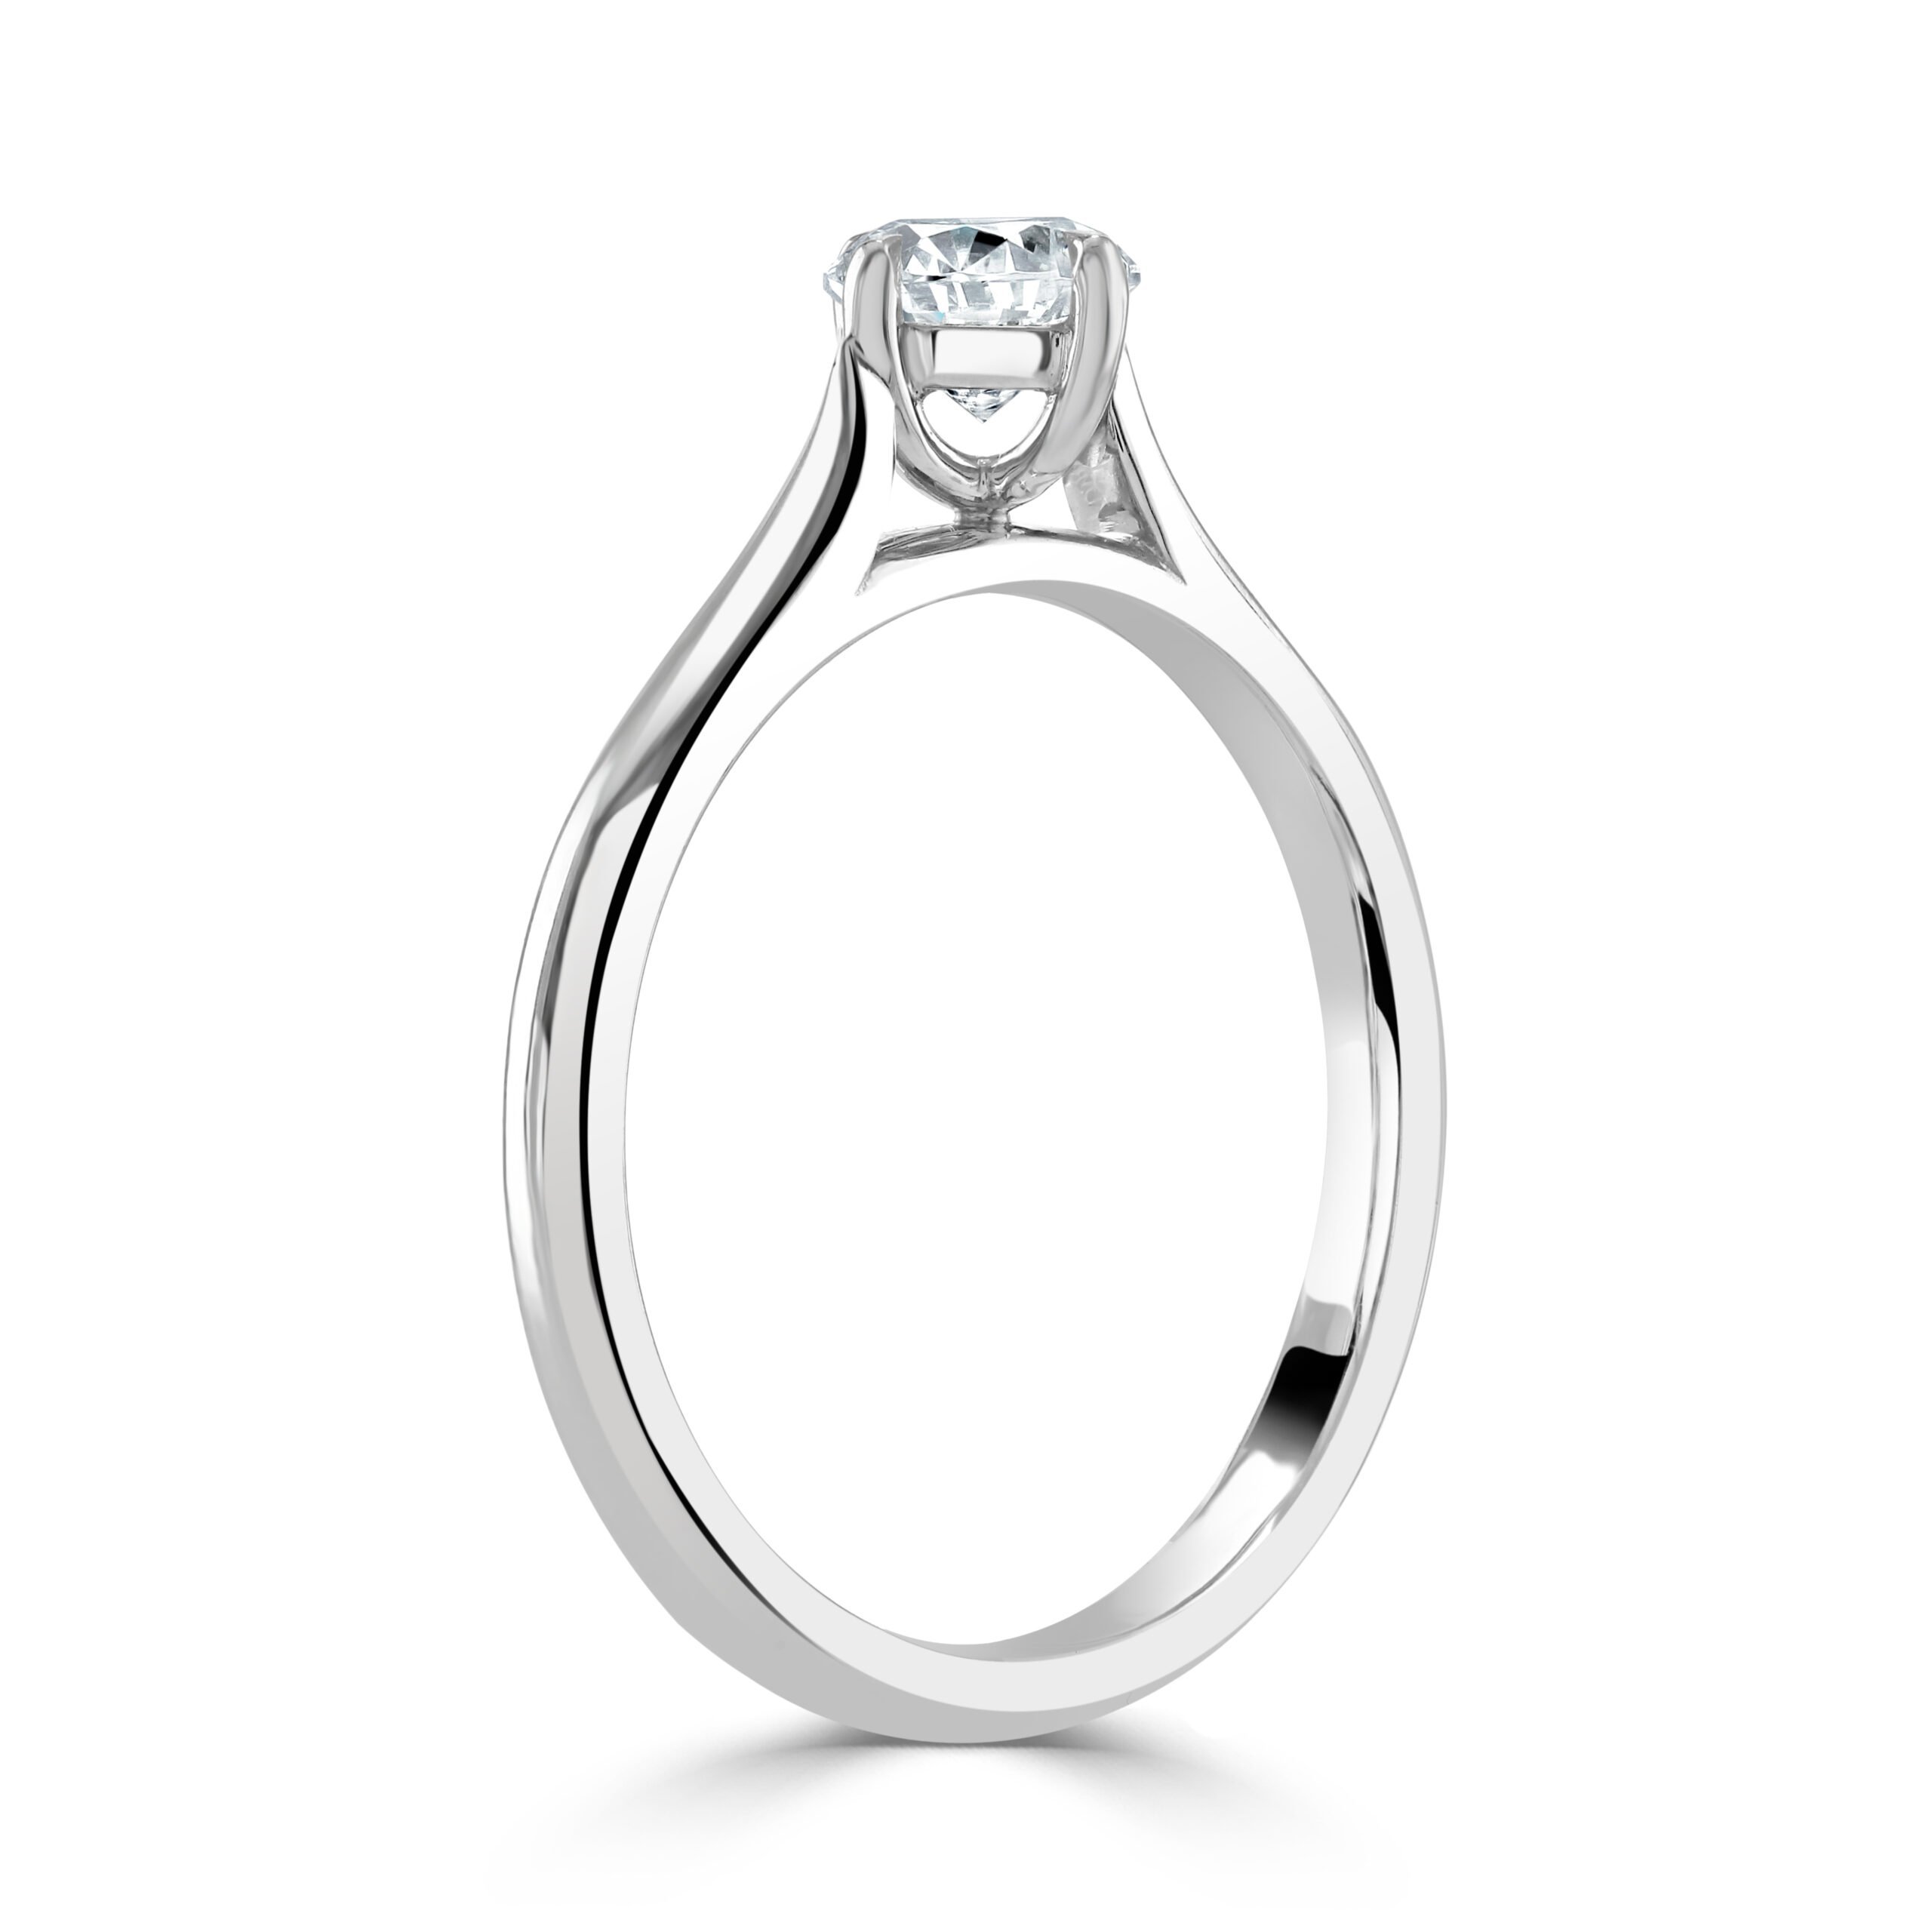 Round Brilliant Cut Diamond Platinum Ring